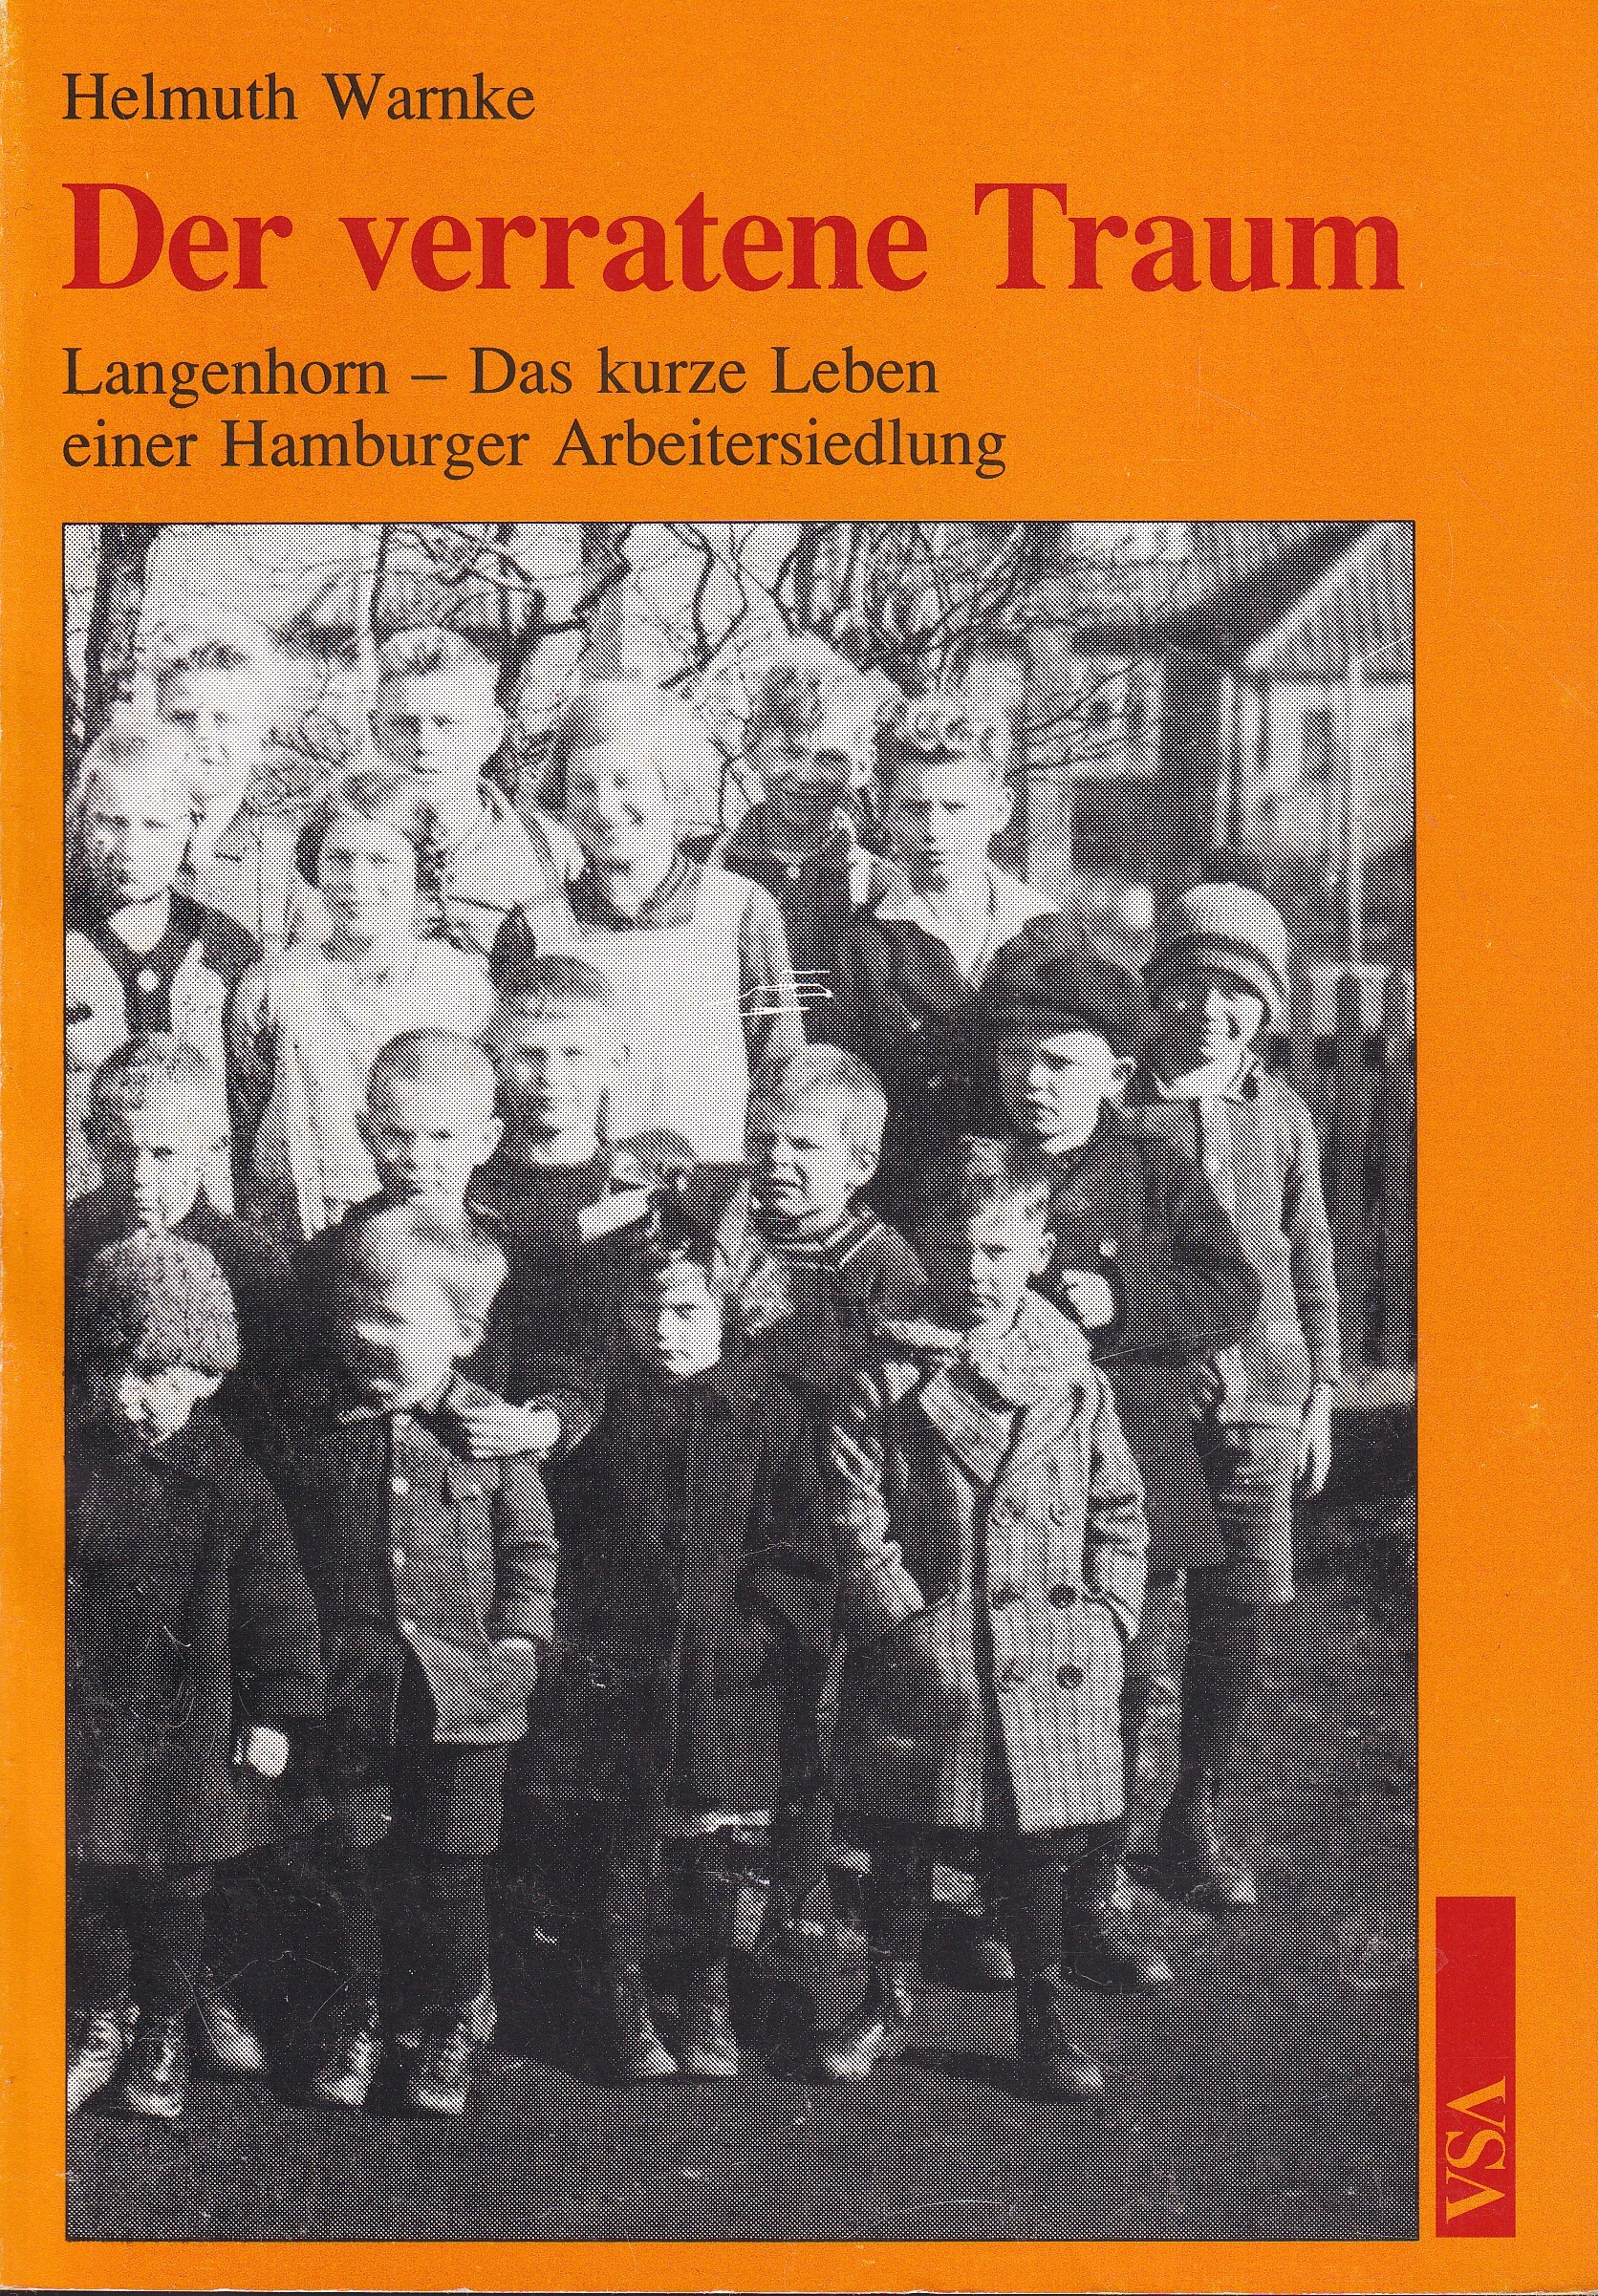 Der verratene Traum. Langenhorn: Das kurze Leben einer Hamburger Arbeitersiedlung. (2. Aufl.). - Warnke, Helmuth.